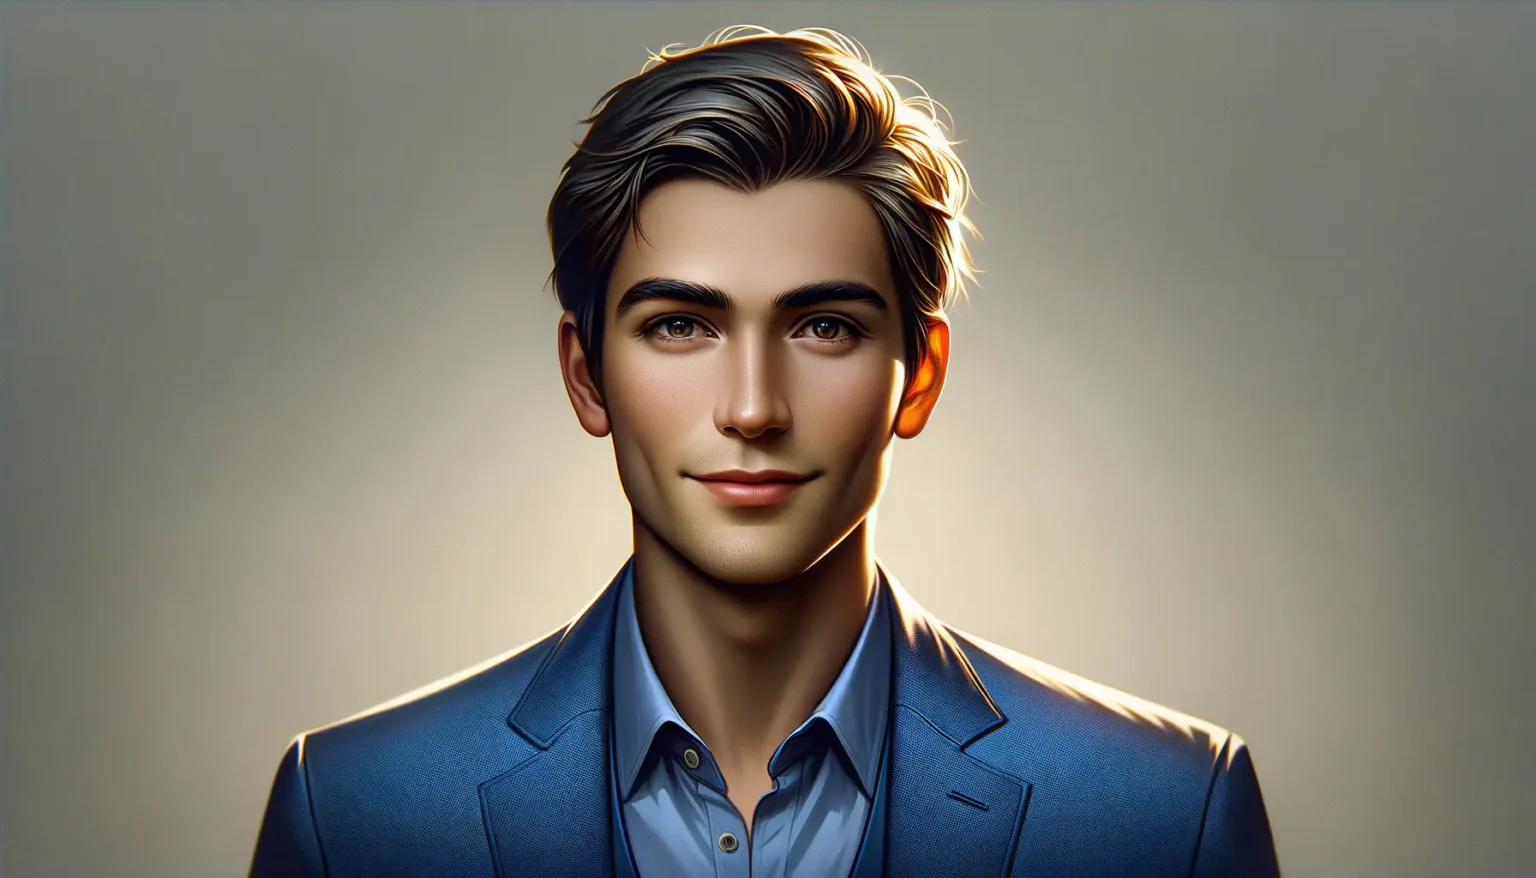 Digital illustrierter Charakter eines jungen Mannes mit gepflegtem Haarschnitt und seriöser blauer Anzugjacke vor einem hellen Hintergrund mit leichtem Schattenspiel. Der Charakter hat markante Gesichtszüge und ein freundliches Lächeln.